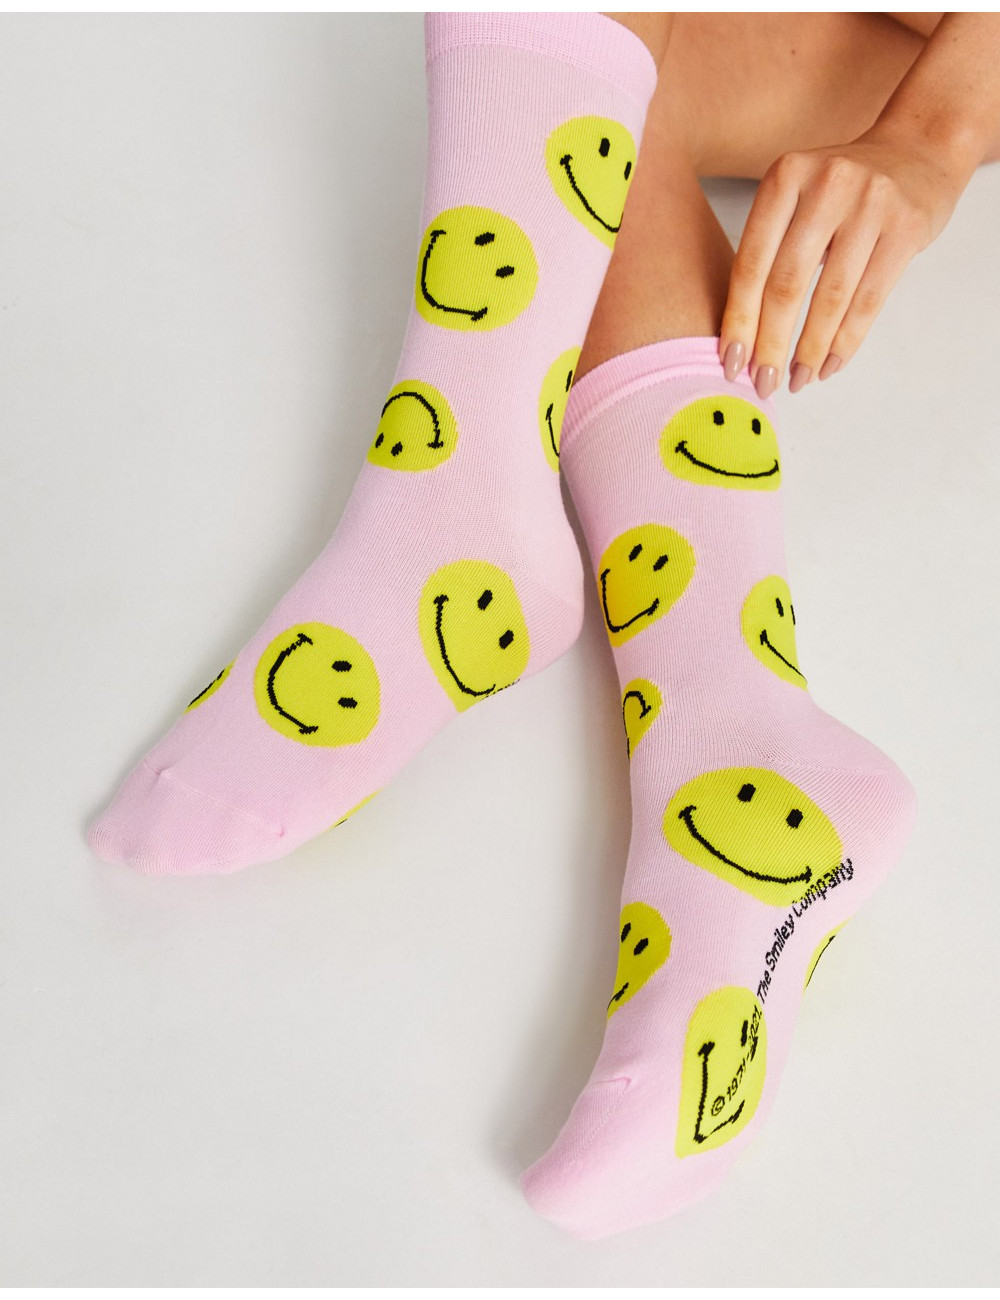 Typo x Smiley face socks in...